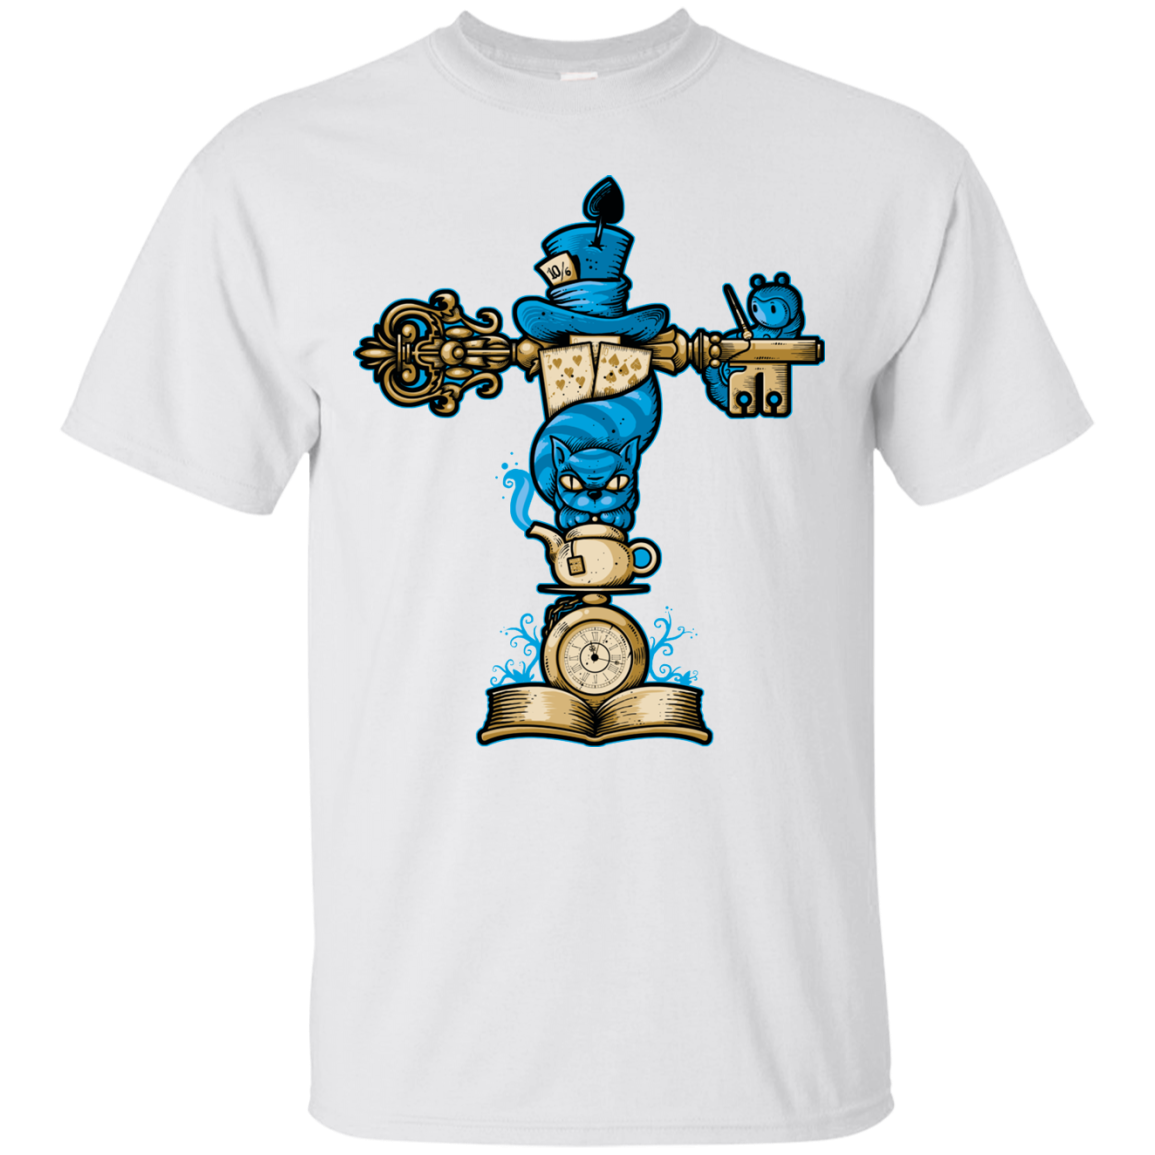 Wonderland Totem T-Shirt